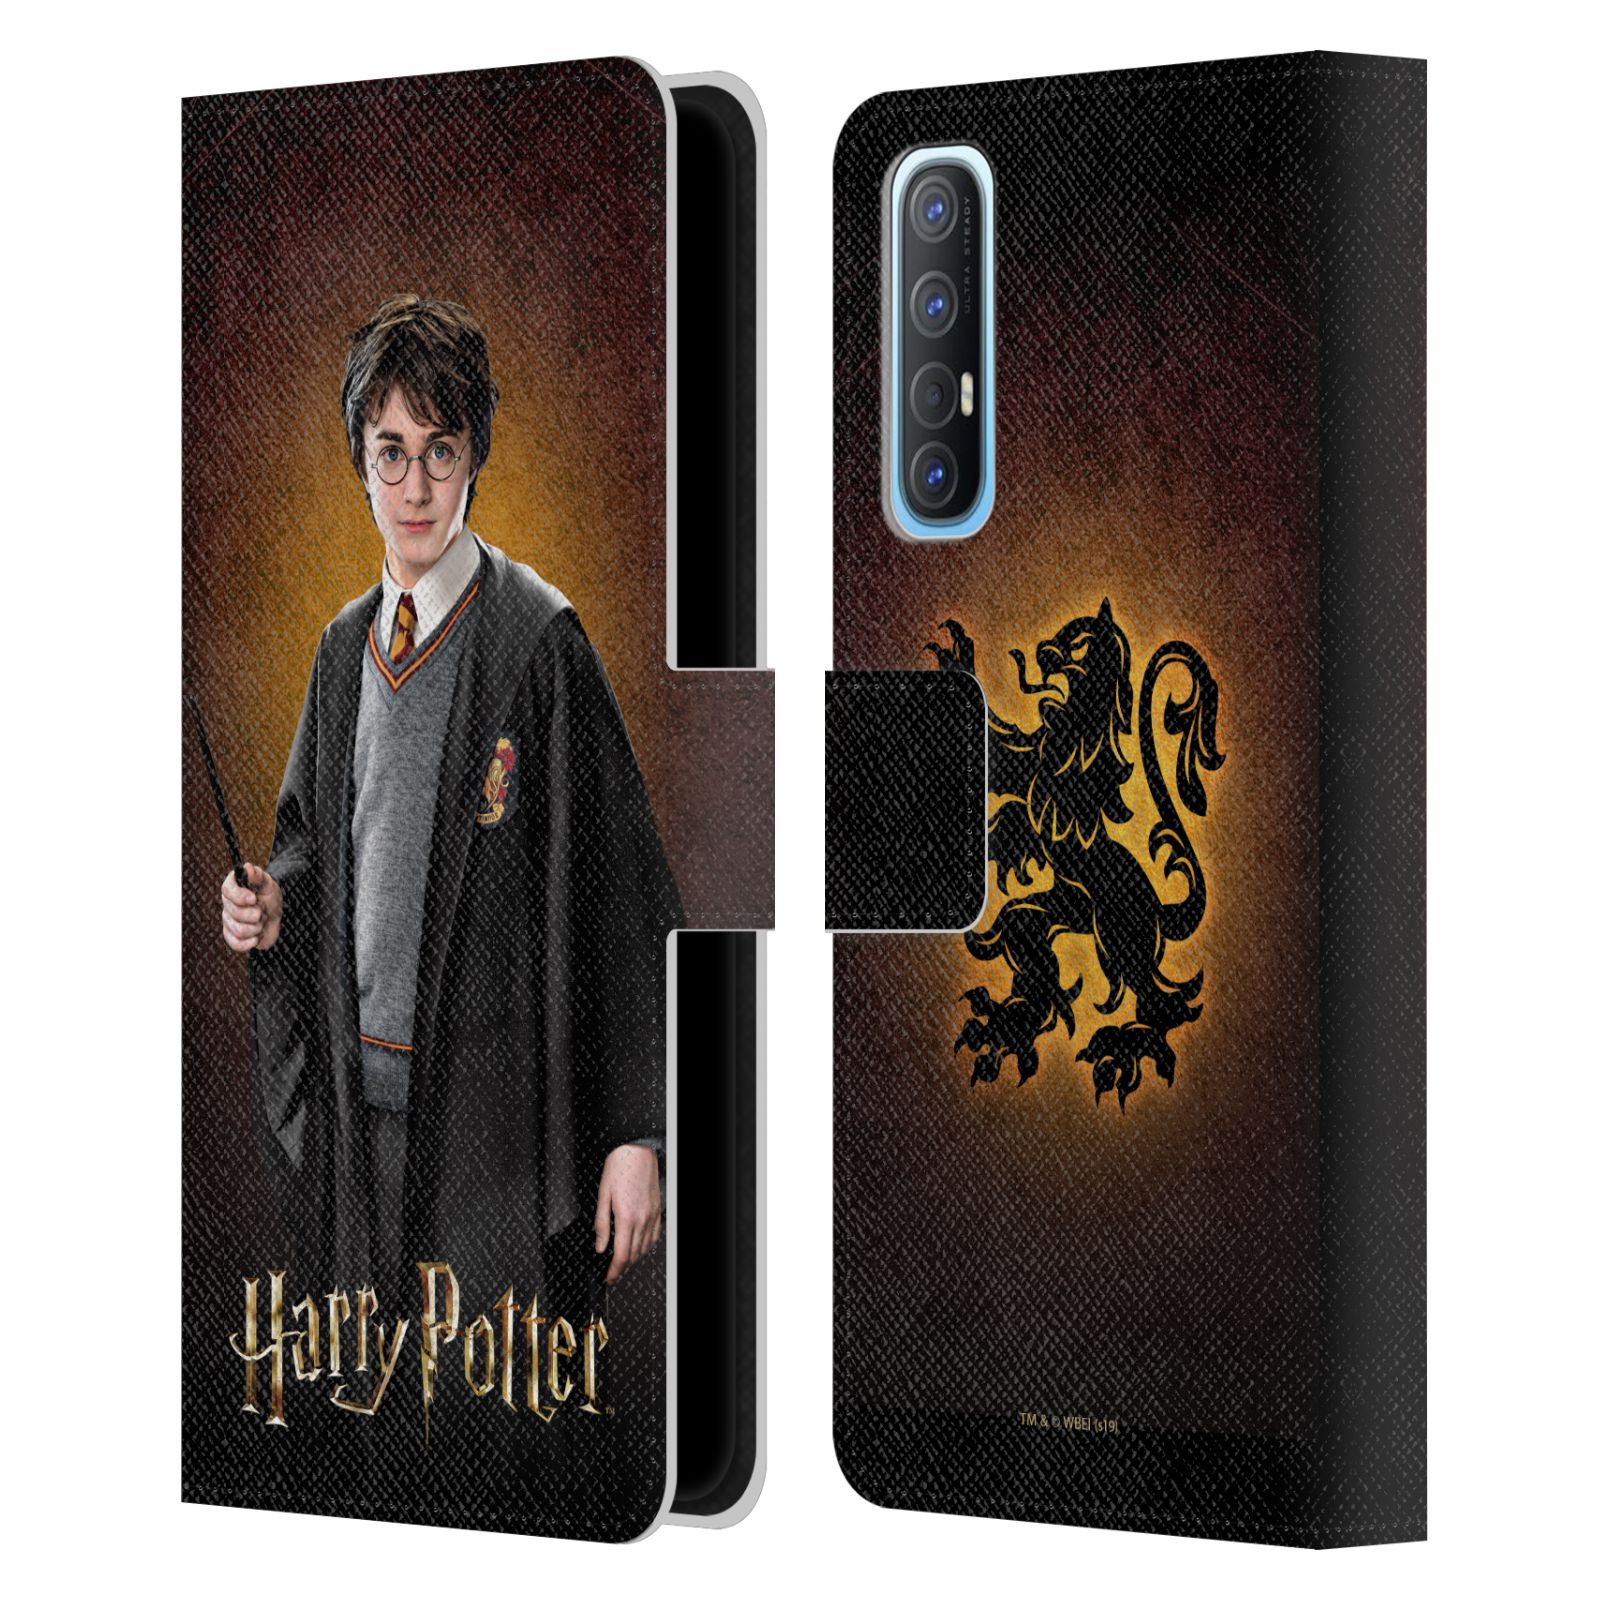 Pouzdro na mobil Oppo Find X2 NEO - HEAD CASE - Harry Potter - Harry Potter portrét